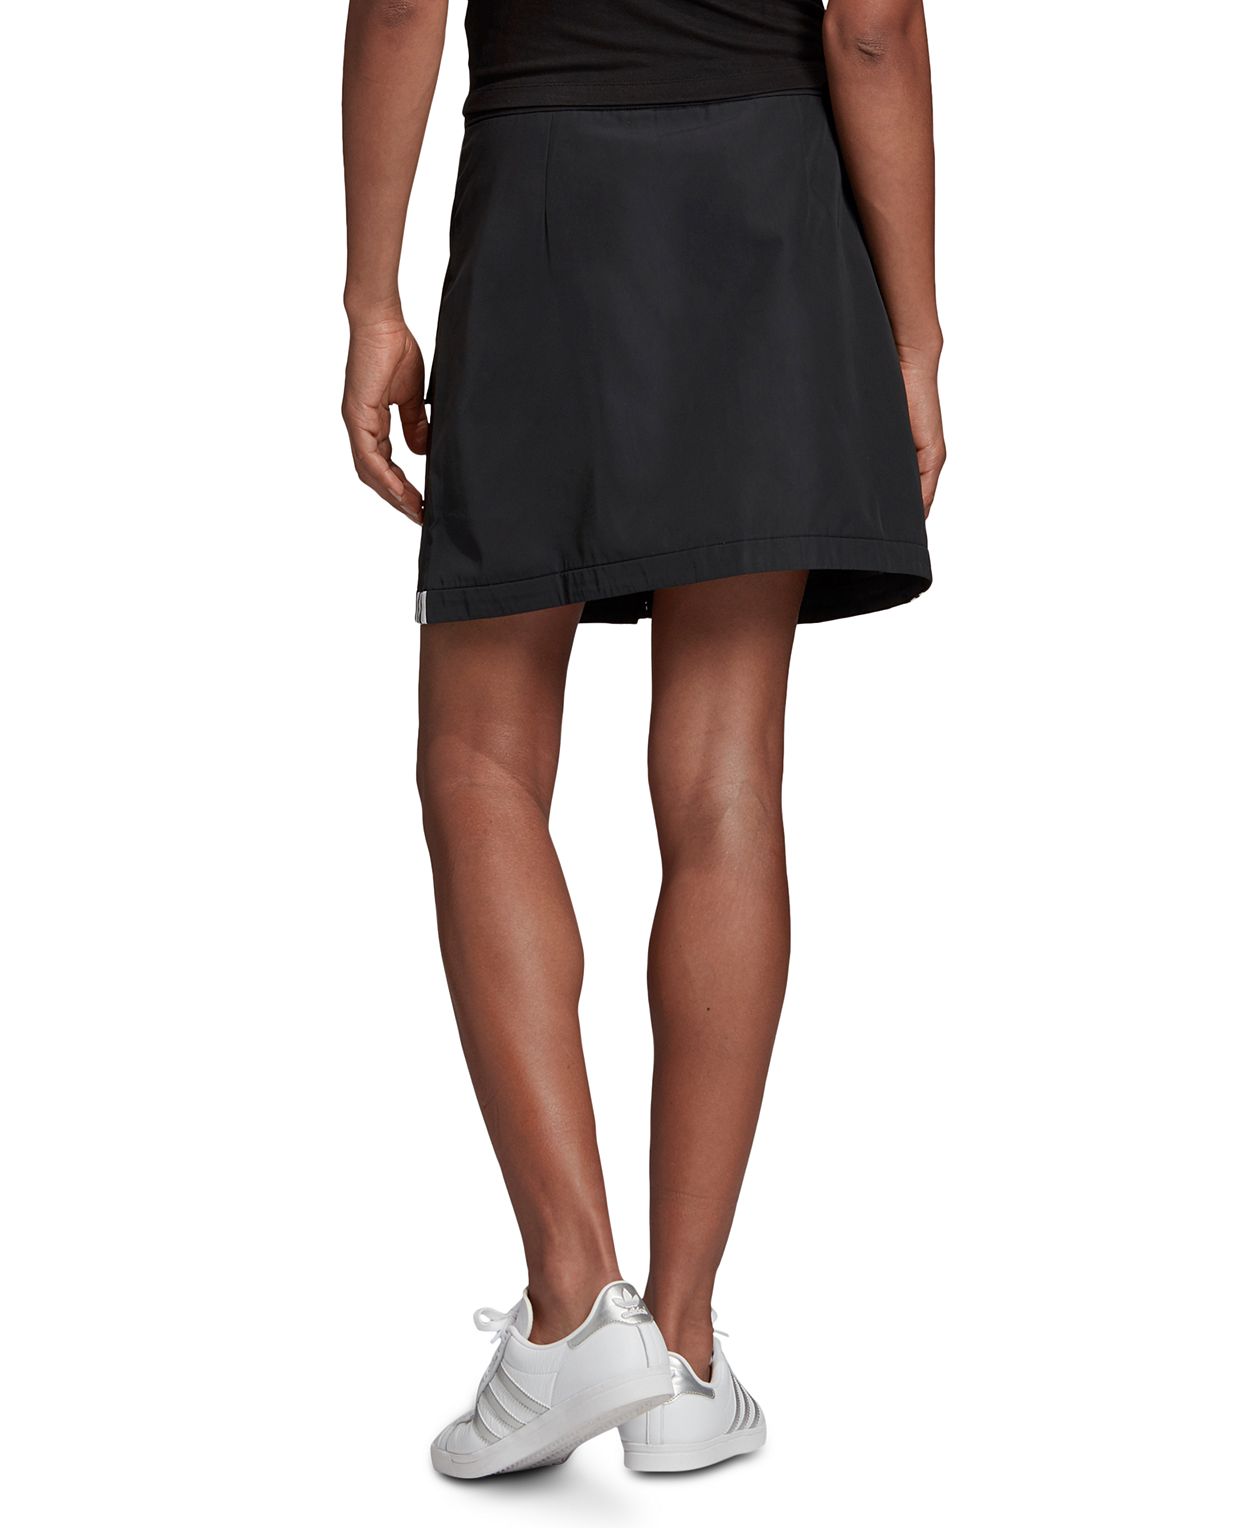 Adidas Womens Vocal Skirt Color Black